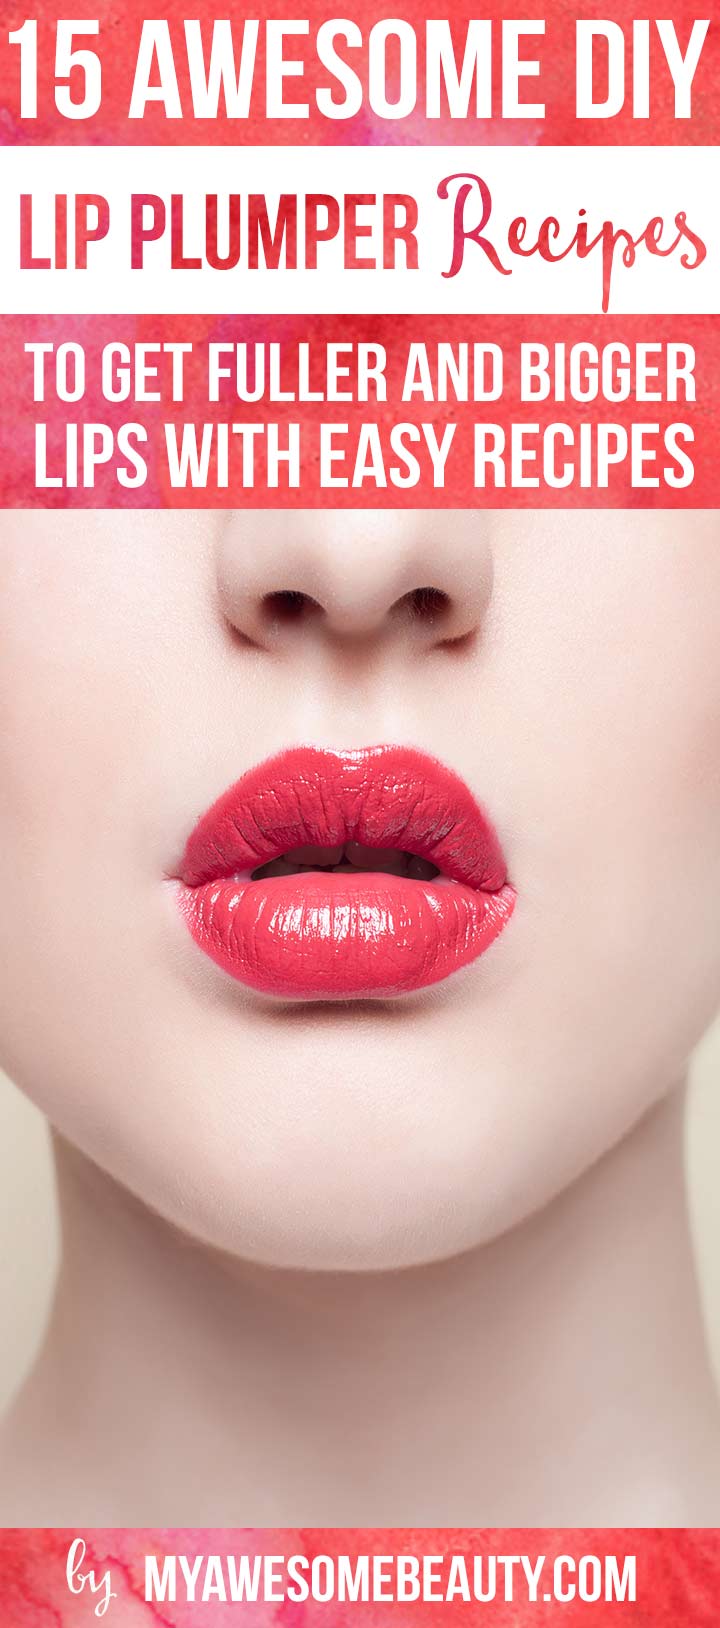 DIY lip plumper recipes